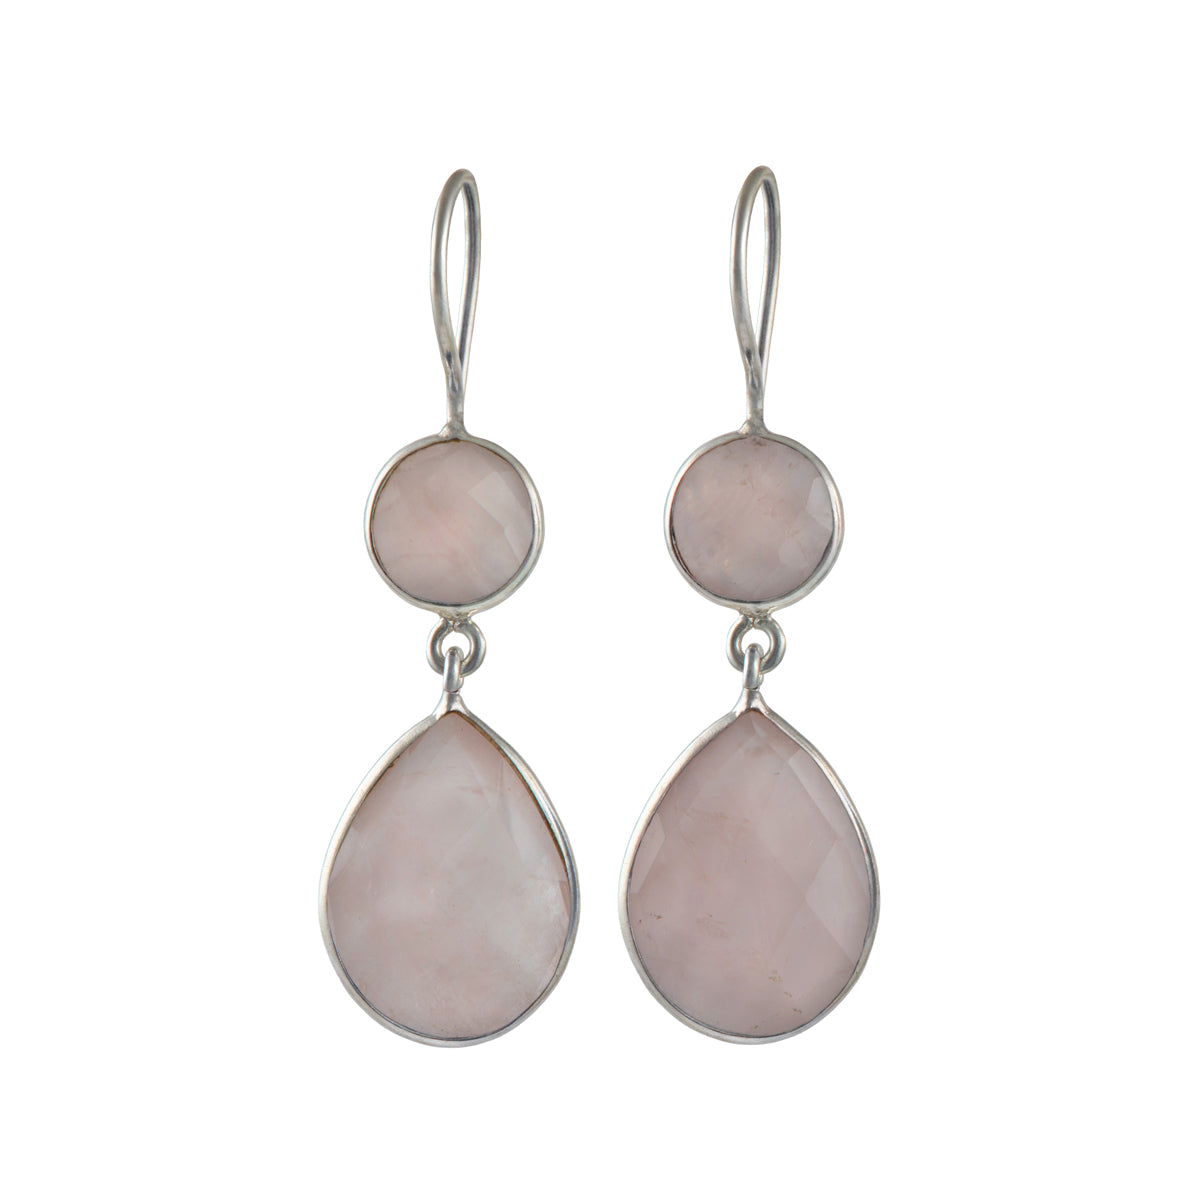 Rose Quartz Gemstone Two Stone Earrings in Sterling Silver - Teardrop